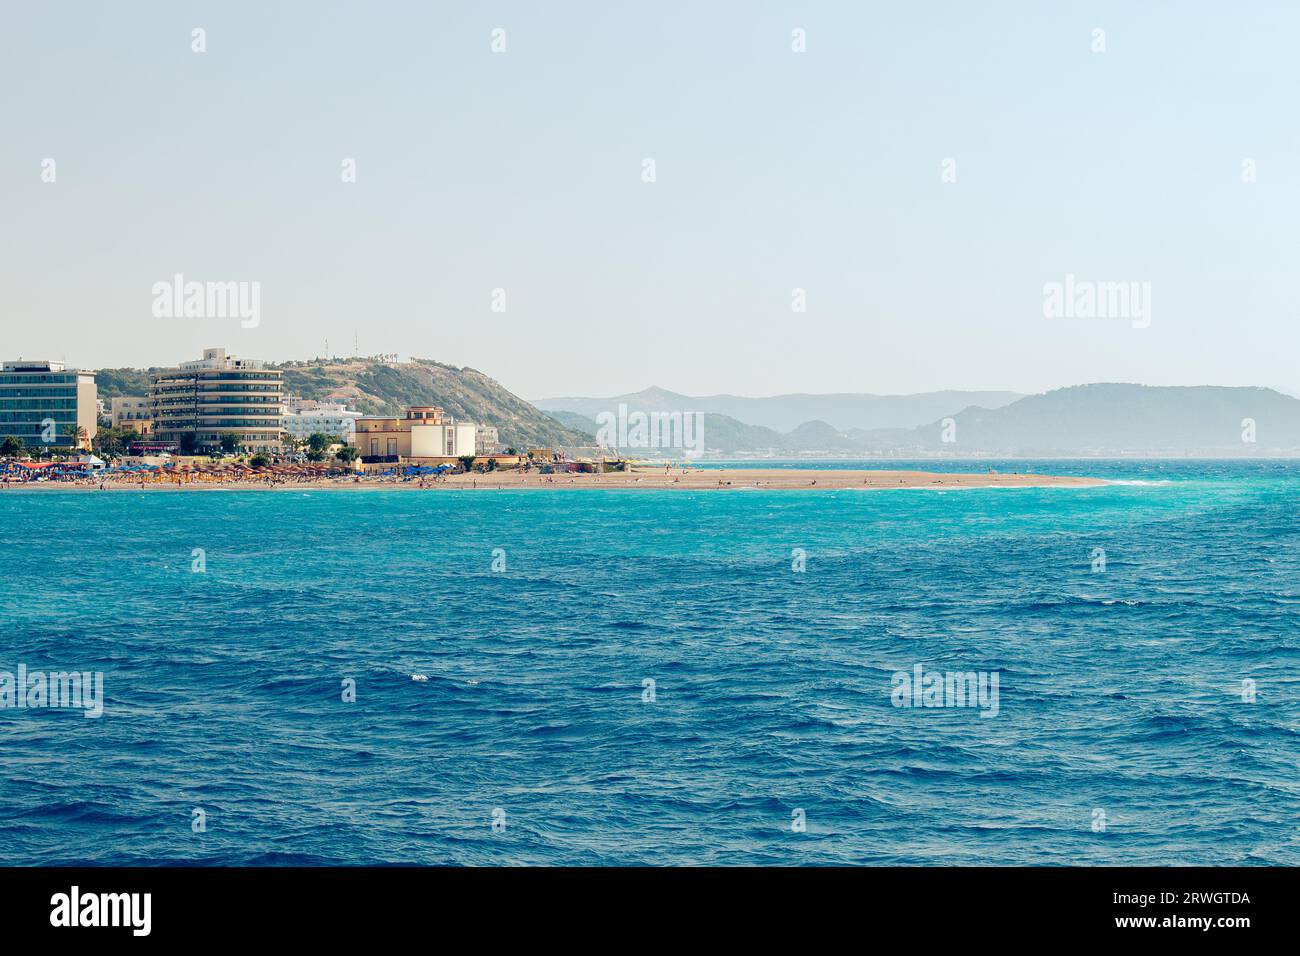 Beliebter Elli Strand oder Paralia Enidriou auf der Insel Rhodos in Griechenland, Europa. Beliebter Sandstrand in der Stadt an sonnigen Sommertagen, blauer Himmel. Vom Meer aus gesehen. Stockfoto